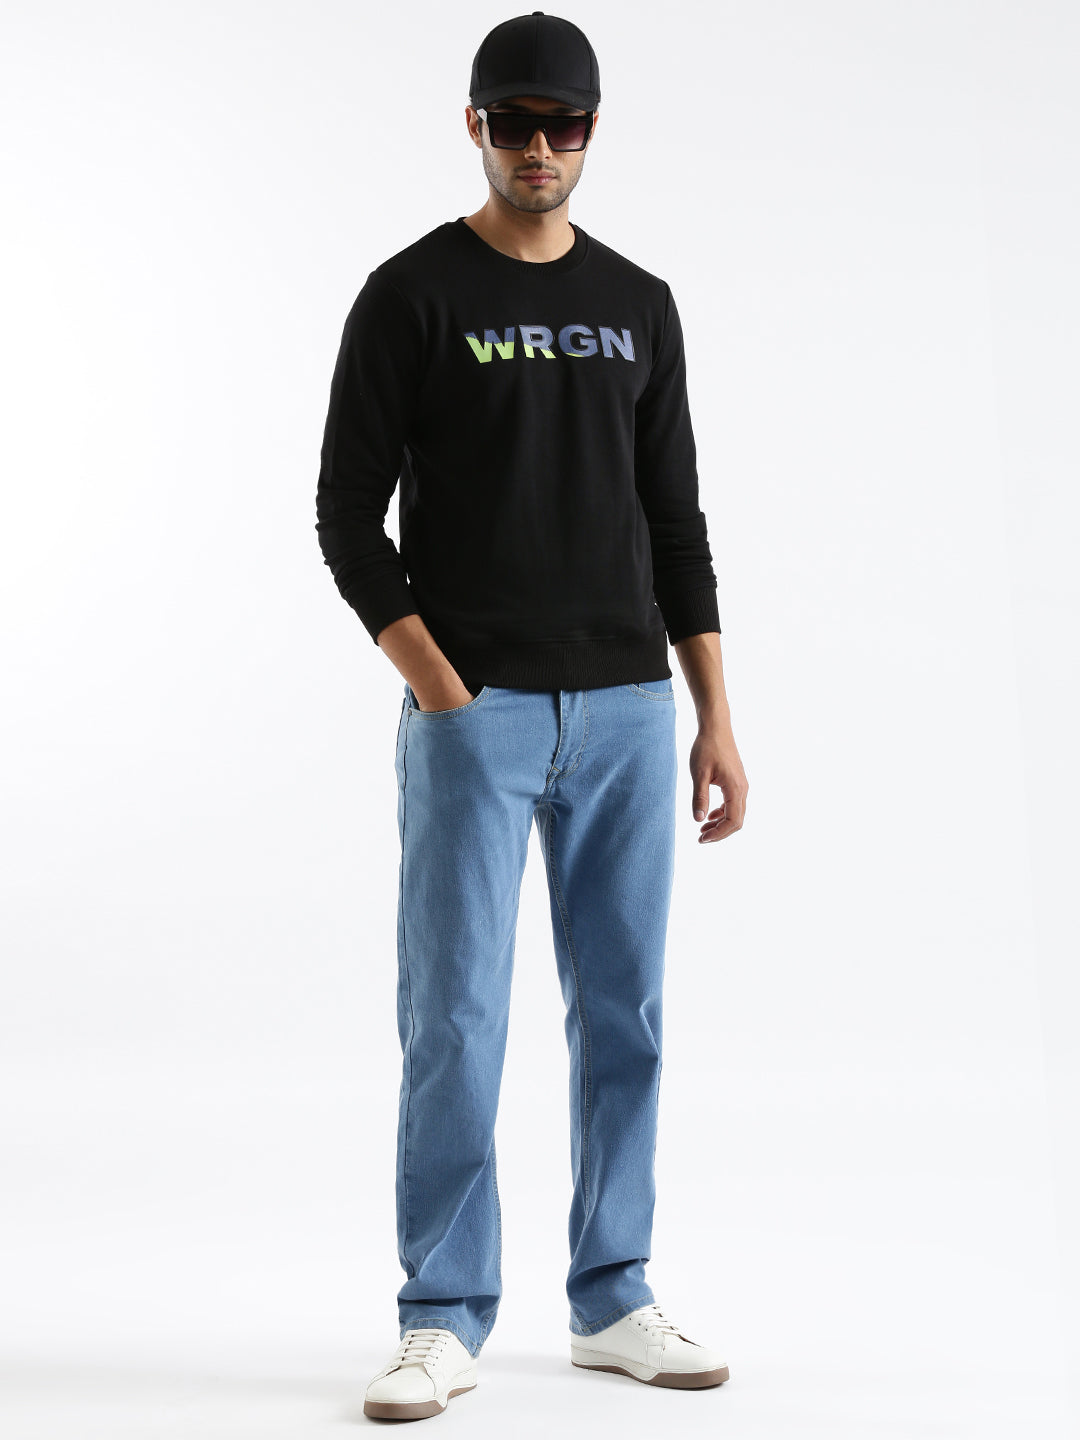 Wrogn Blend Printed Pullover Sweatshirt